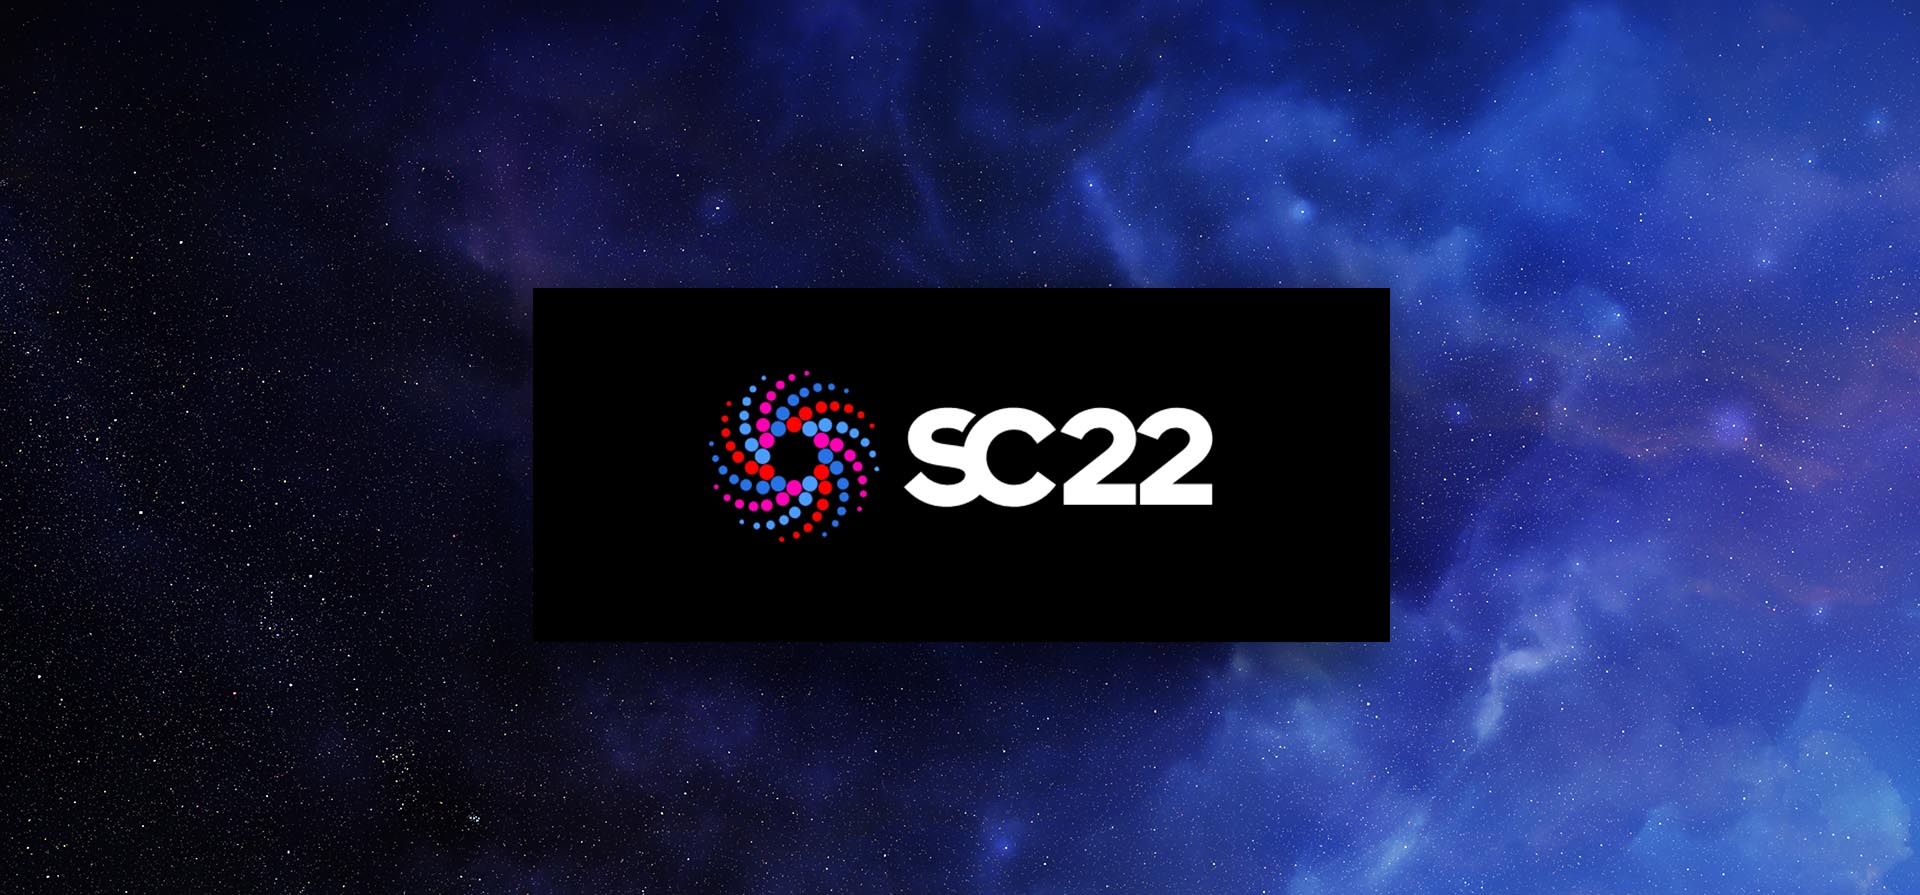 SC22 Provides Glimpse into Tomorrow’s Data Center